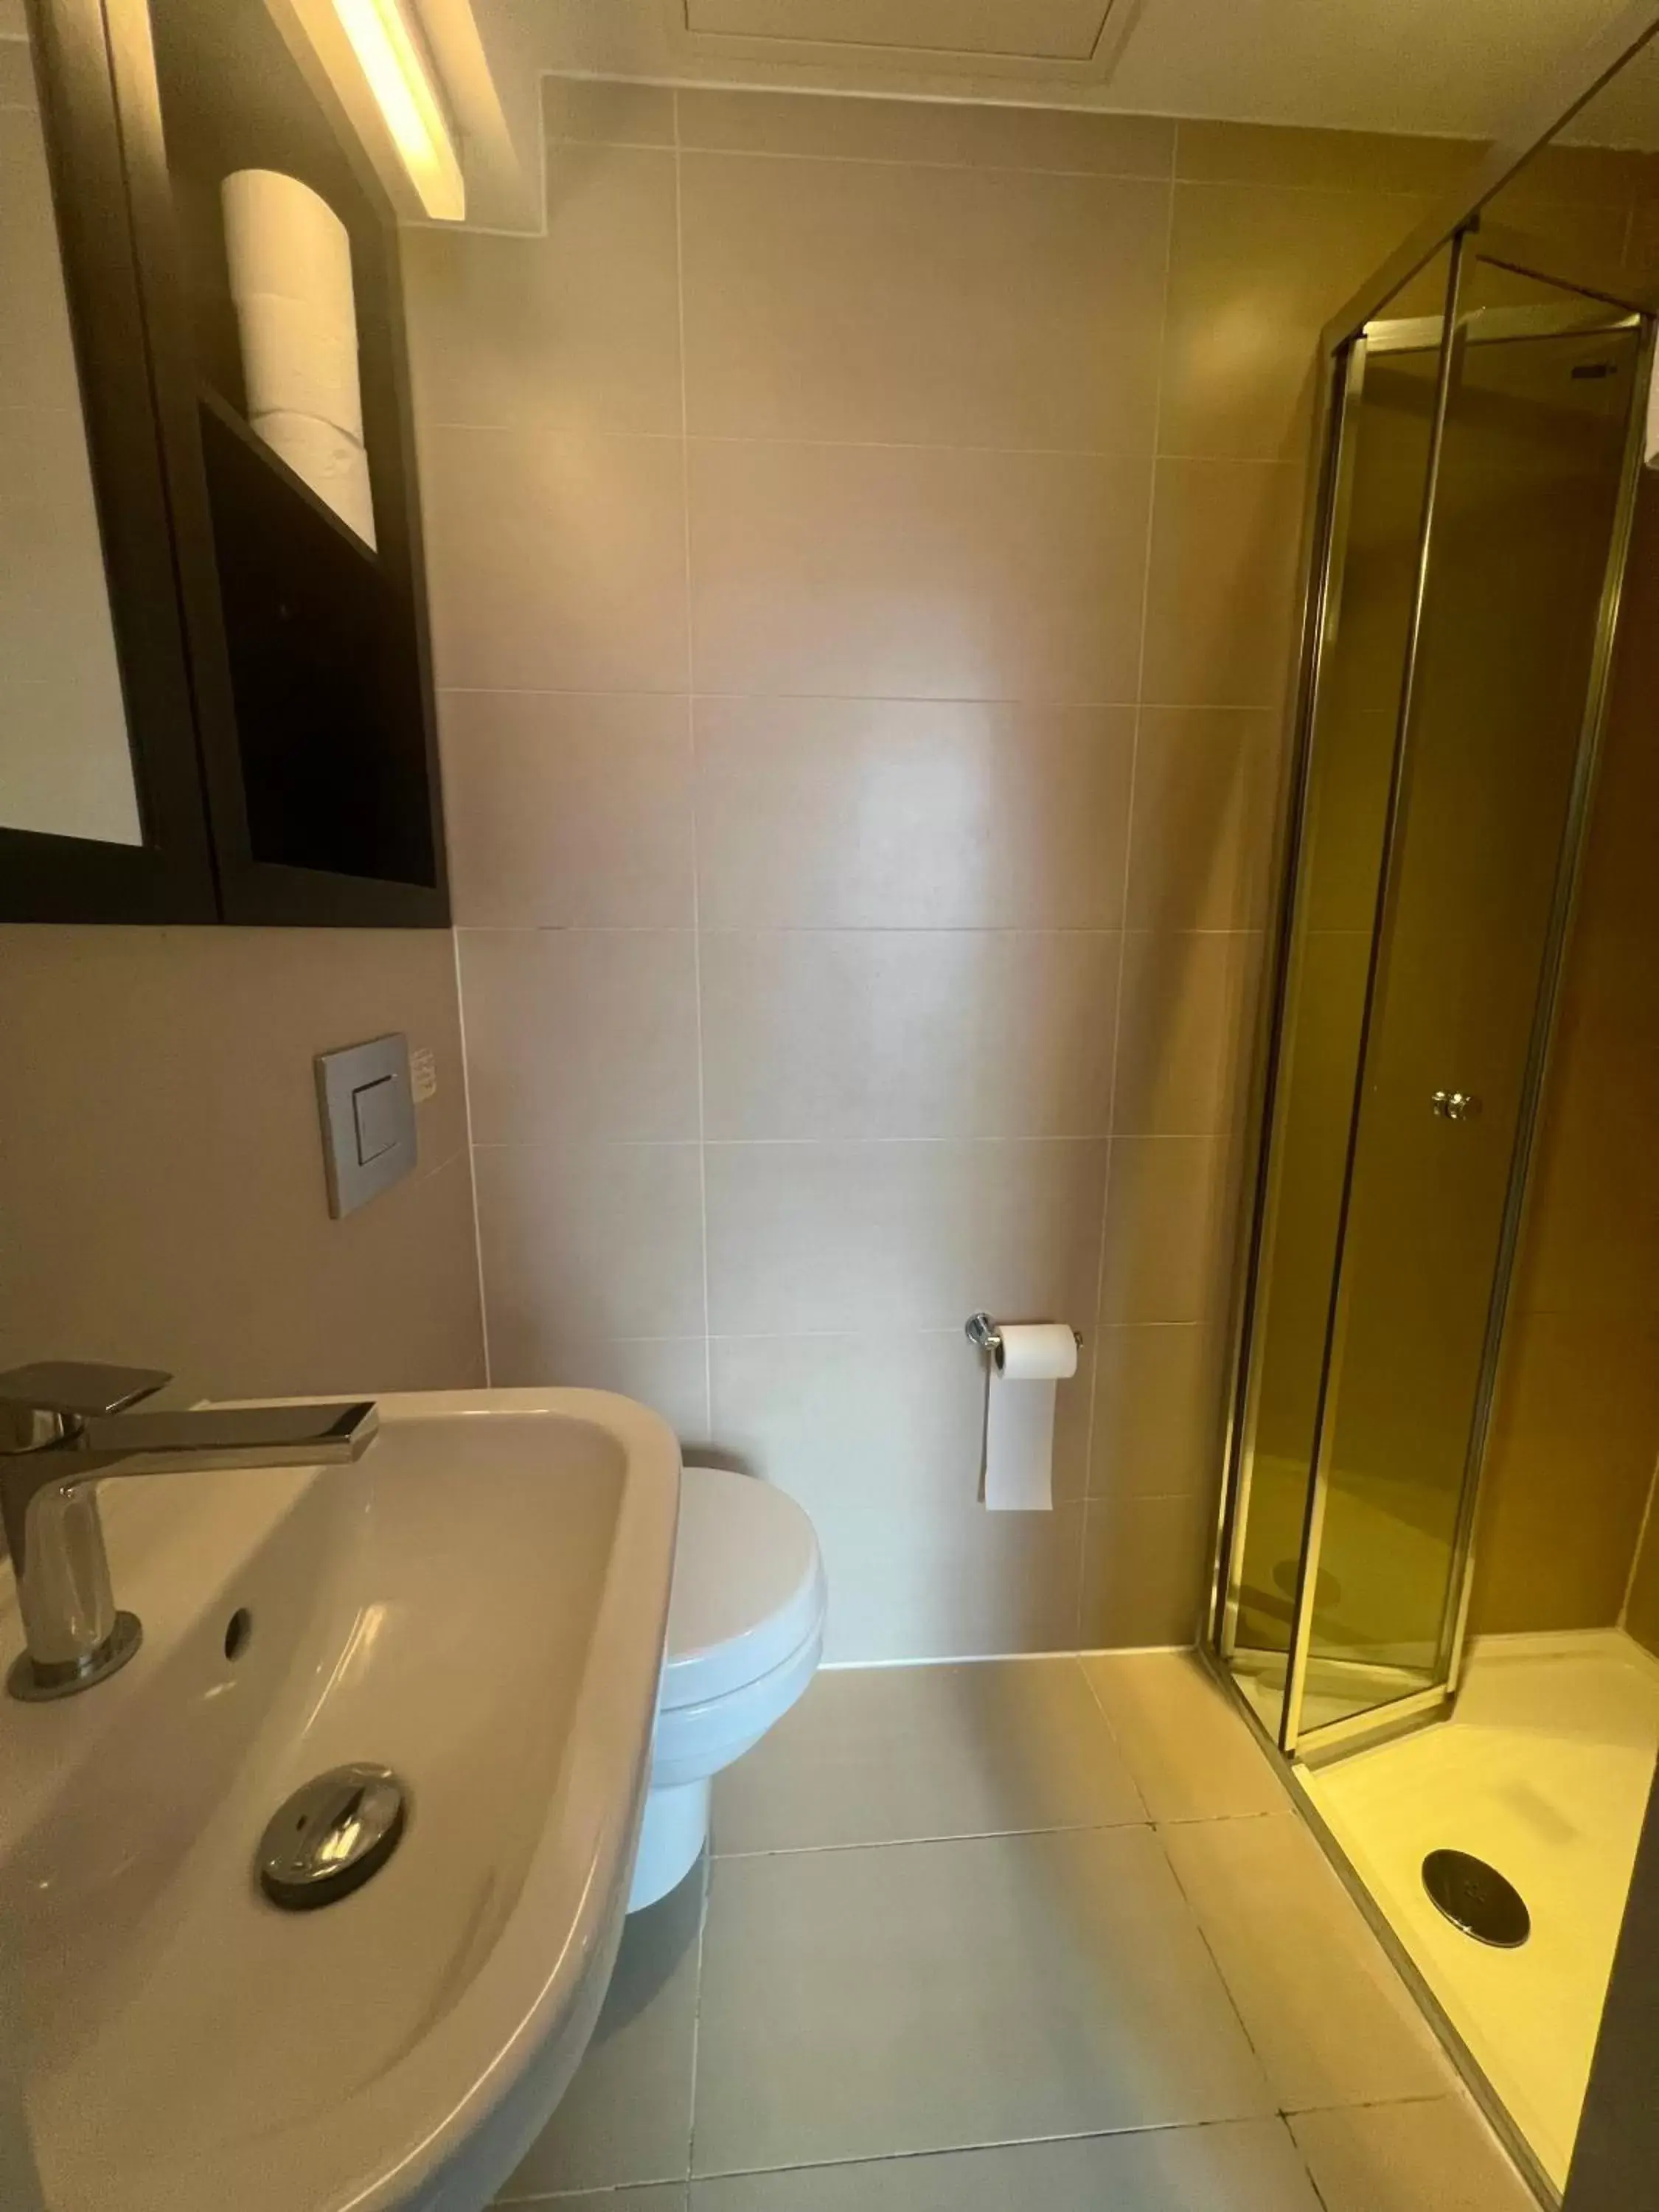 Toilet, Bathroom in Bloomsbury Palace Hotel